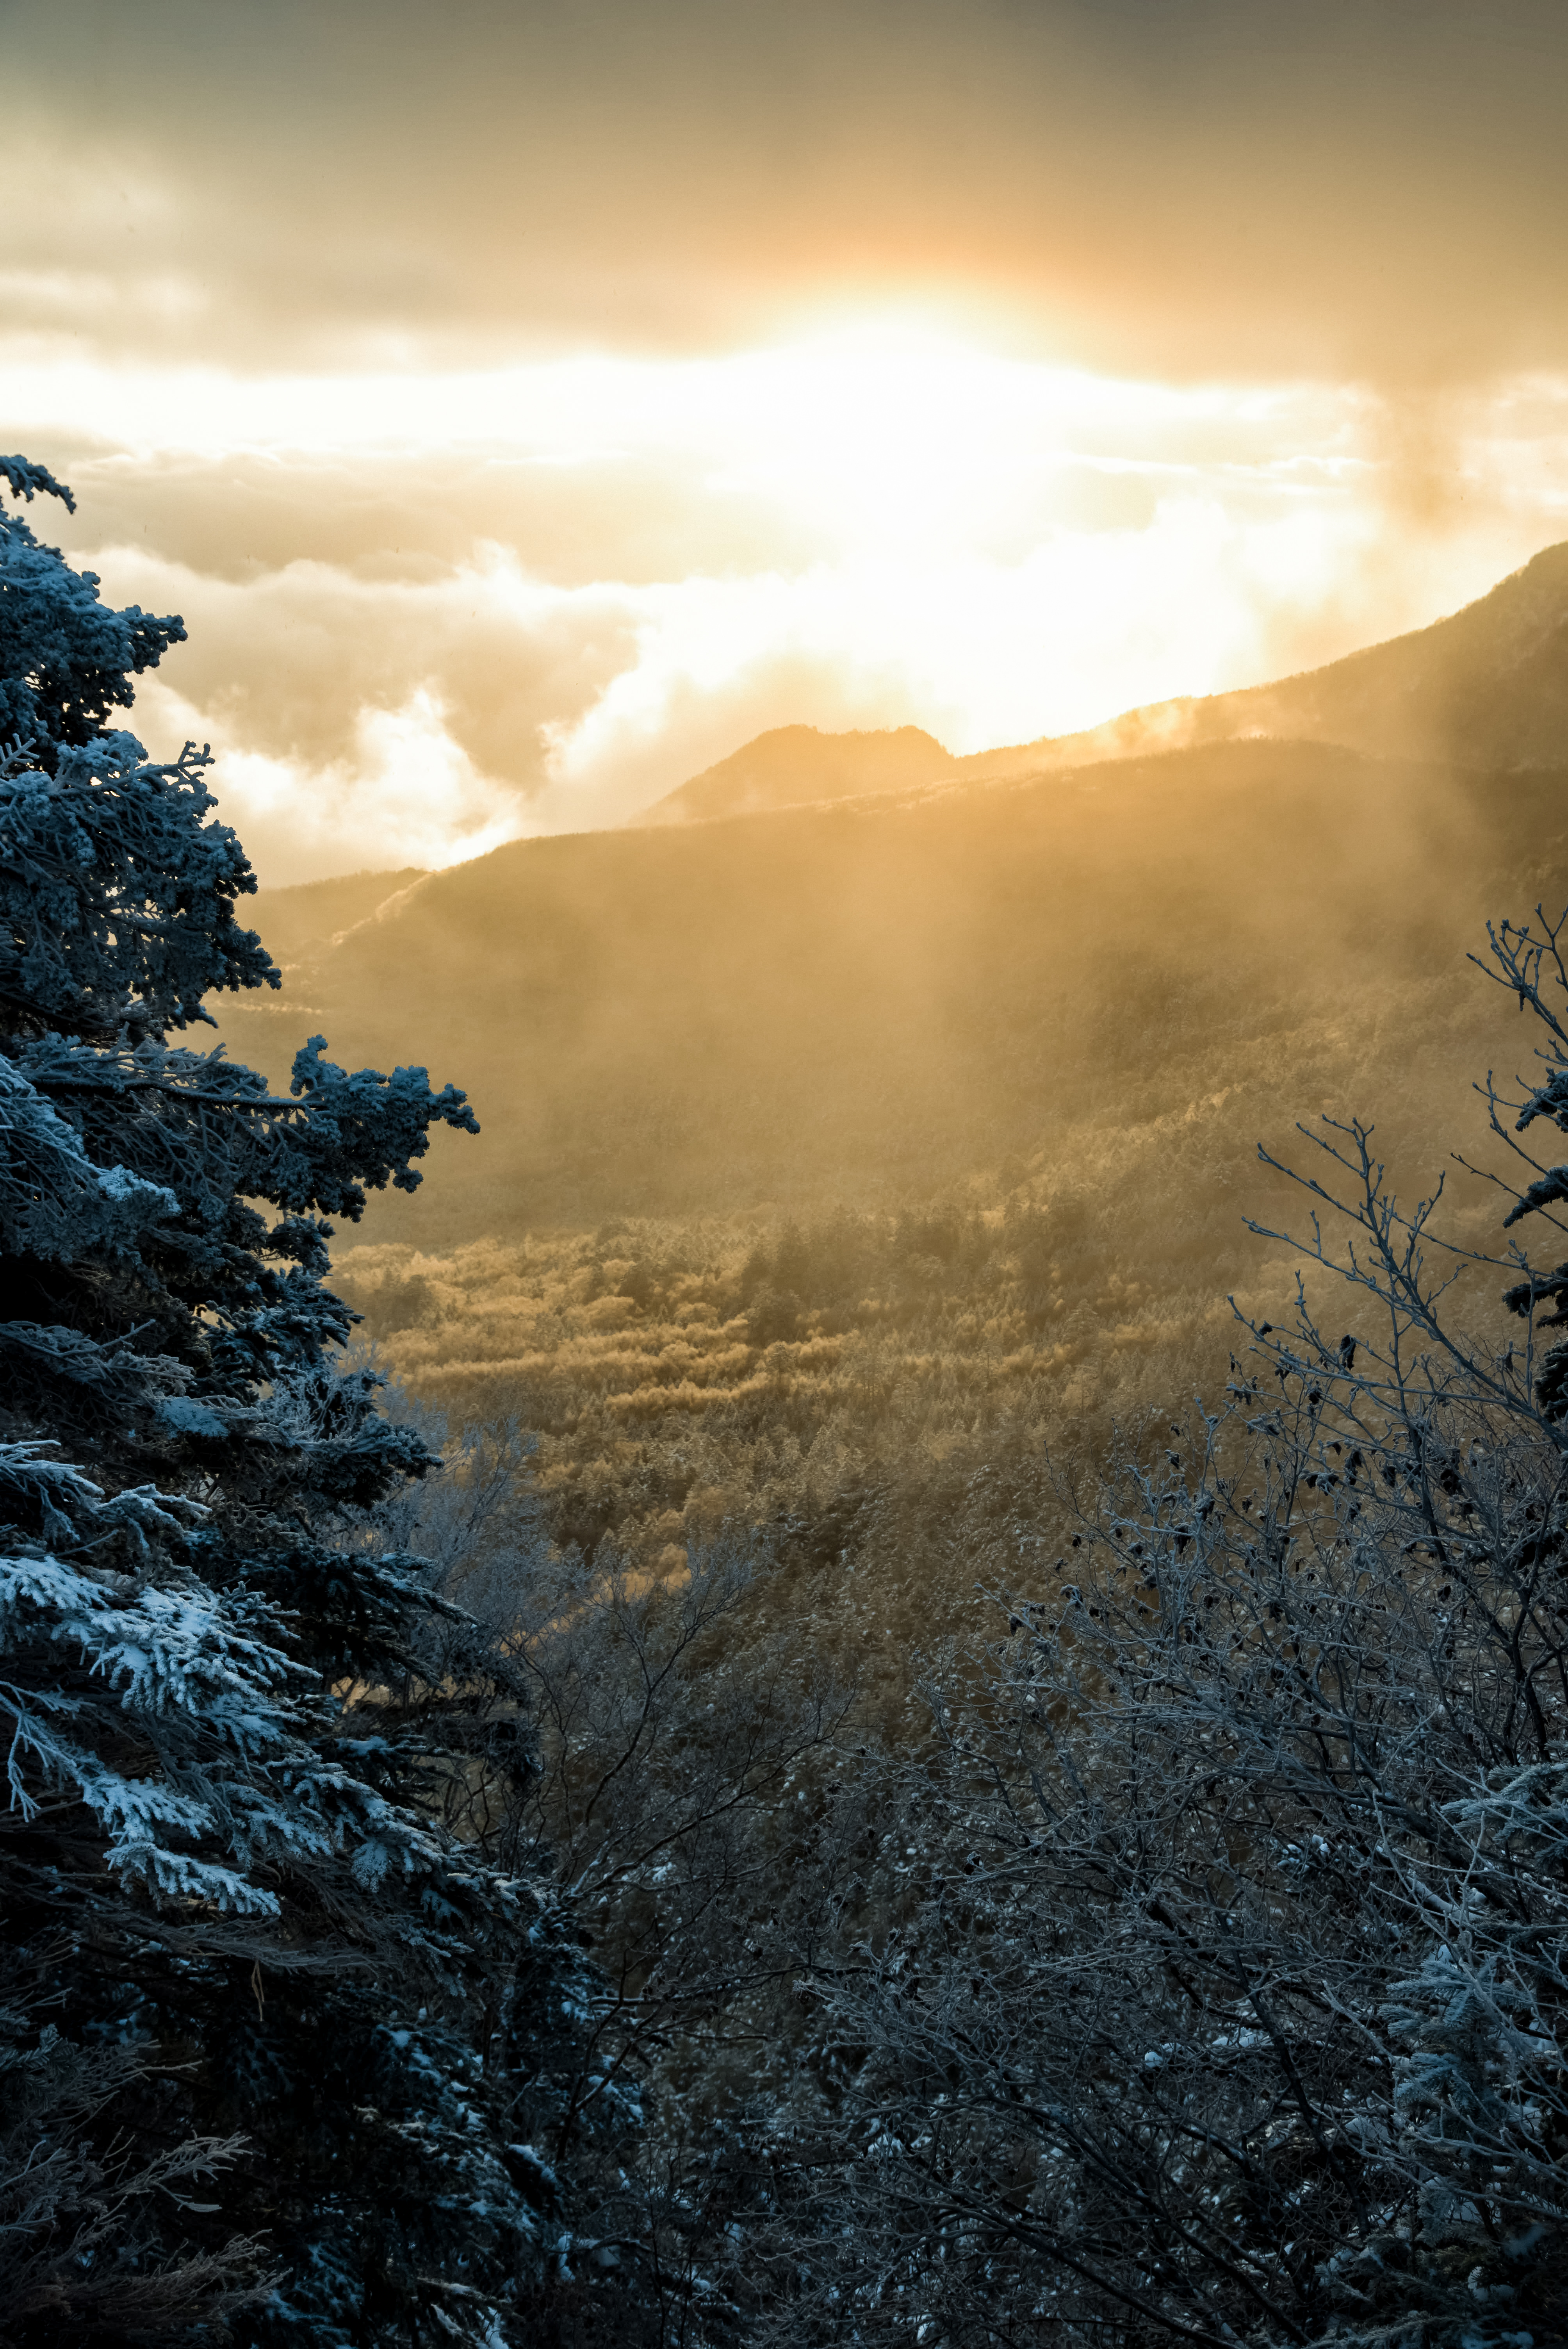 厳冬期の白銀の森と差し込む朝日の無料の写真素材 フリー素材 をダウンロード ぱくたそ